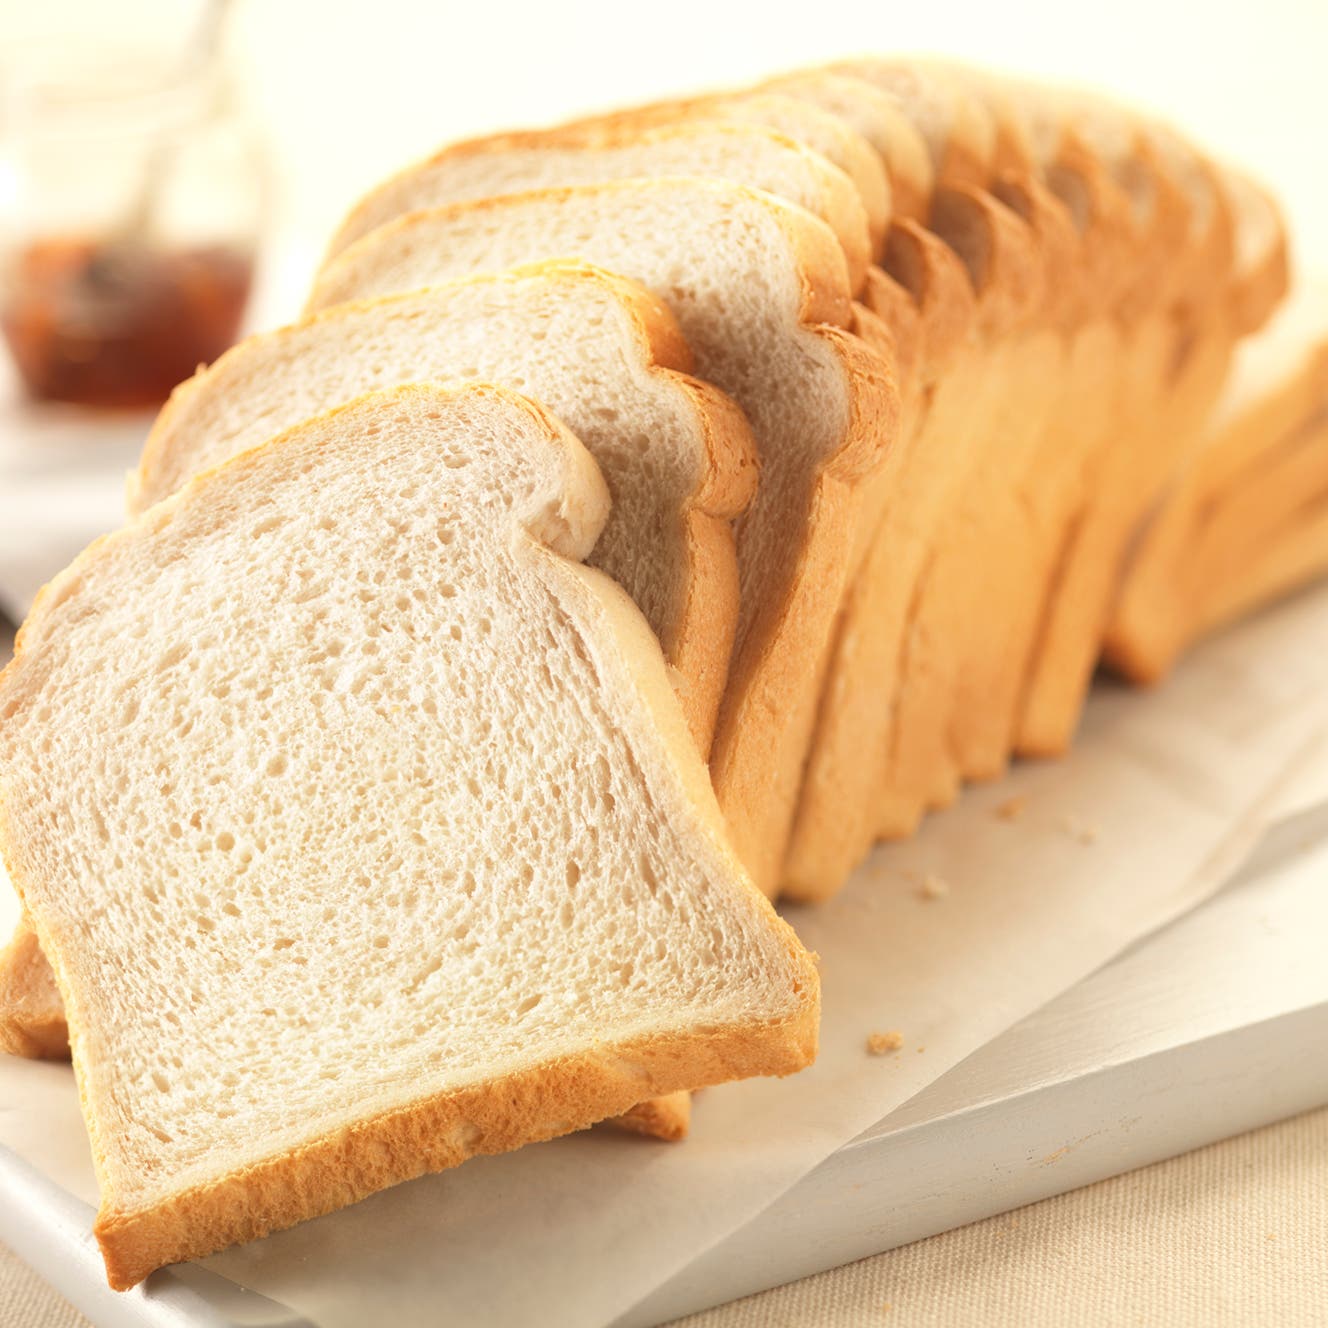 فكر مرتين قبل تناول الخبز الأبيض.. يؤدي لخطر الوفاة المبكرة!